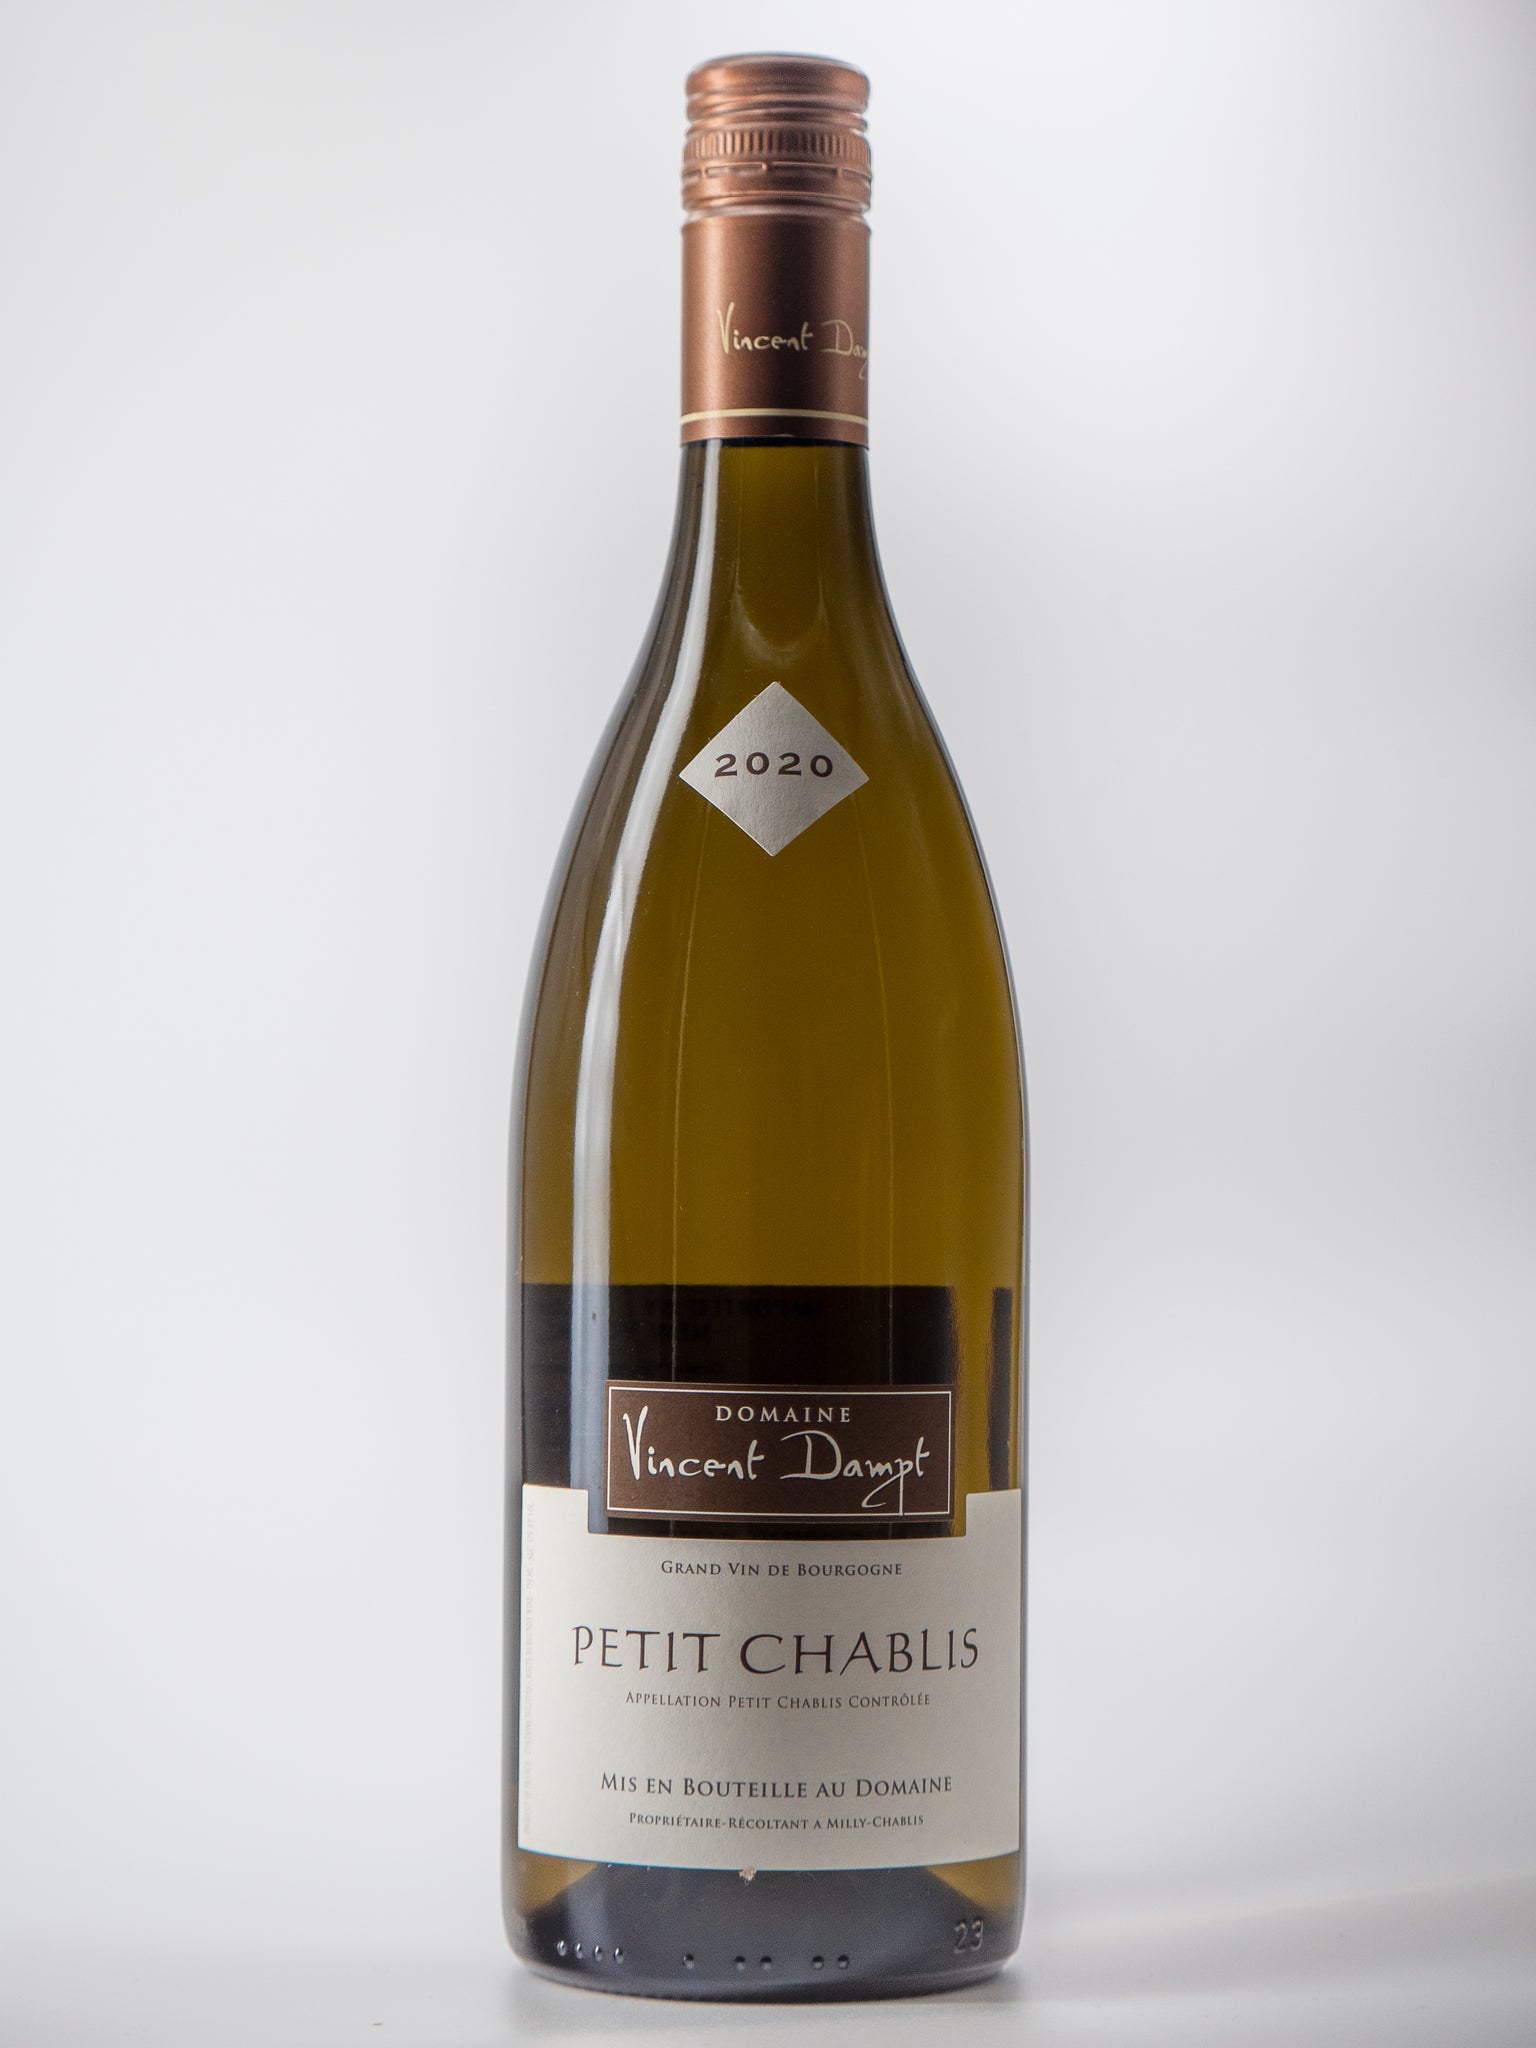 Chardonnay, Vincent Dampt Petit Chablis